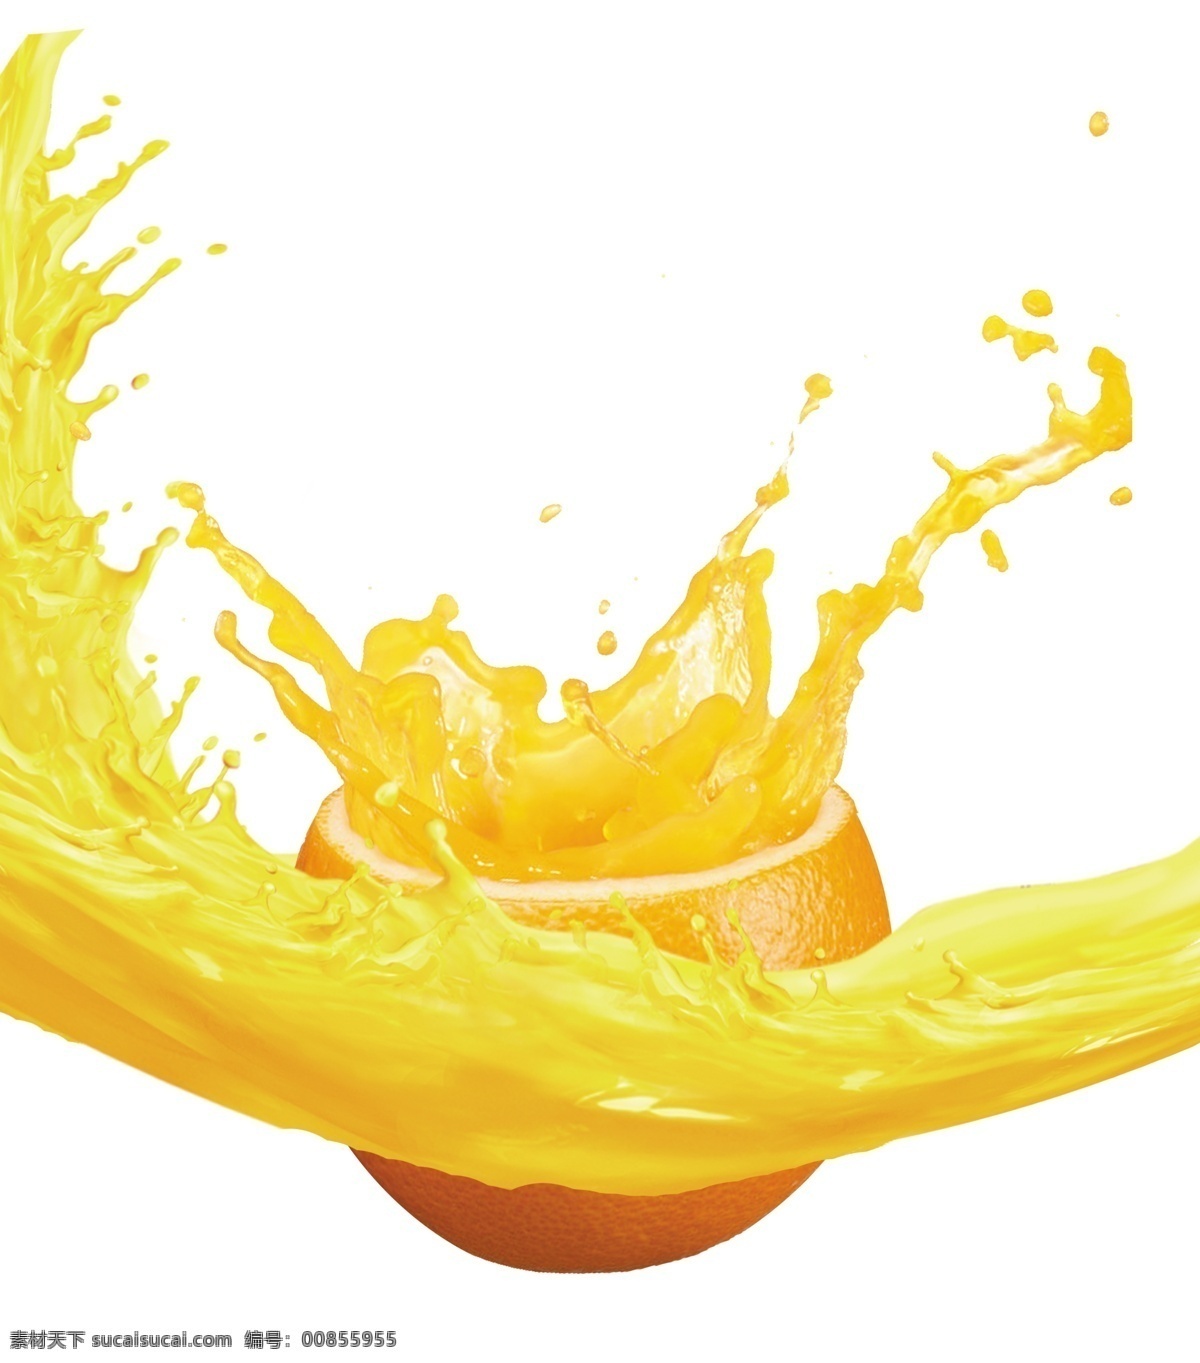 果汁图片 果汁 橙子汁 分层 溅起果汁 桔子汁